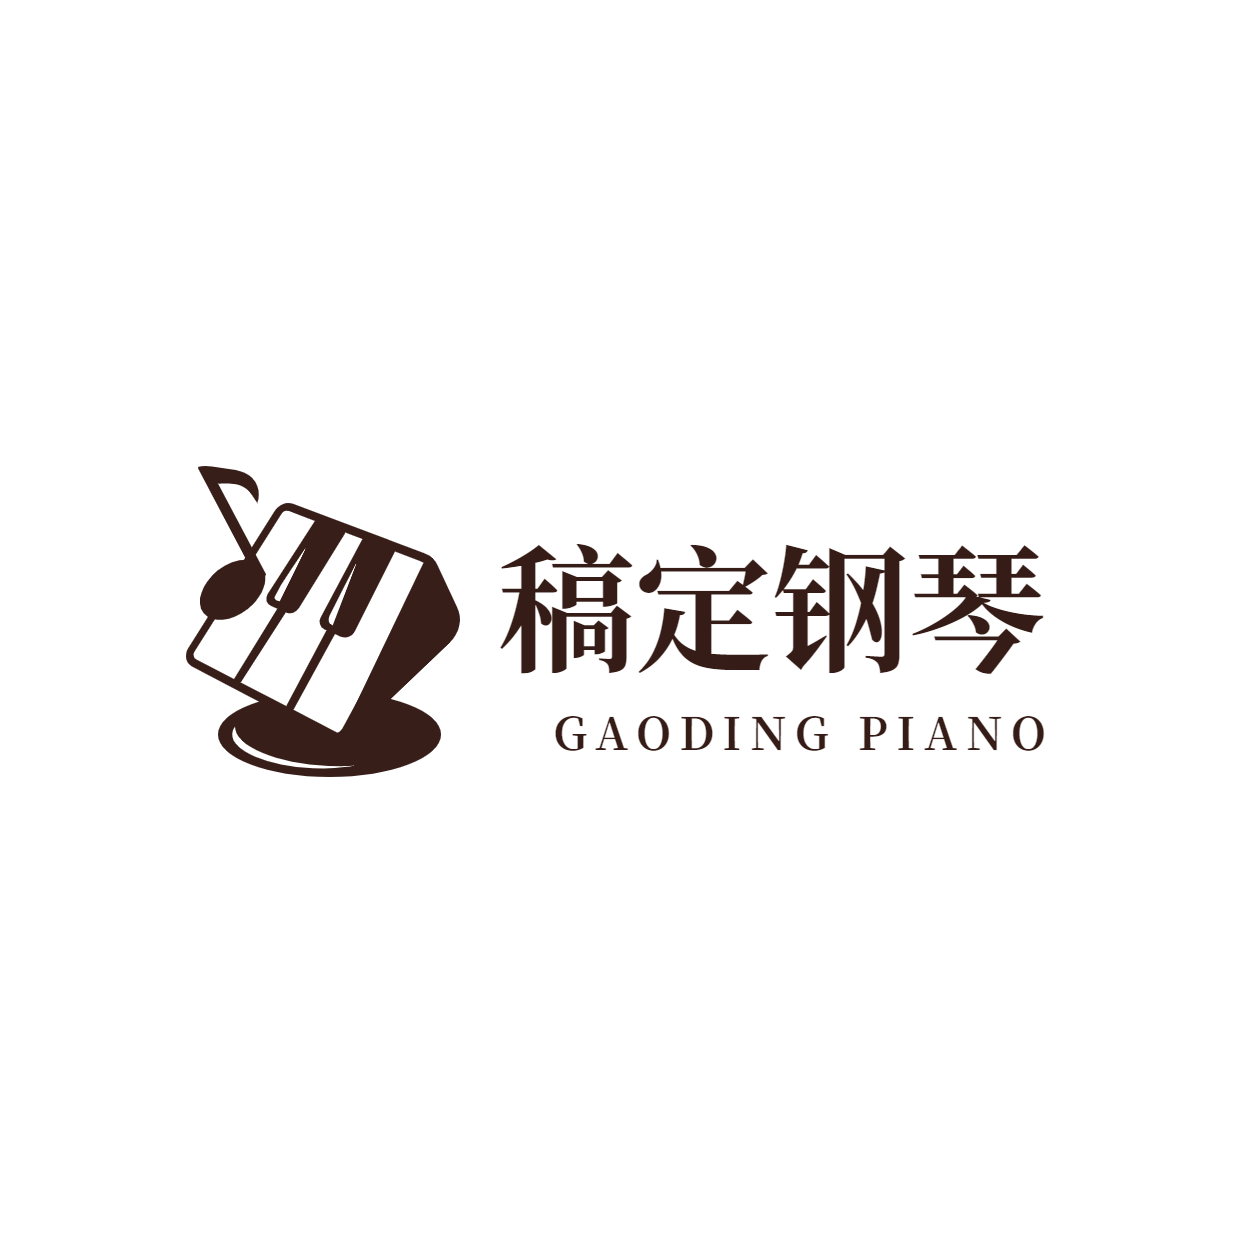 教育培训机构钢琴班logo预览效果